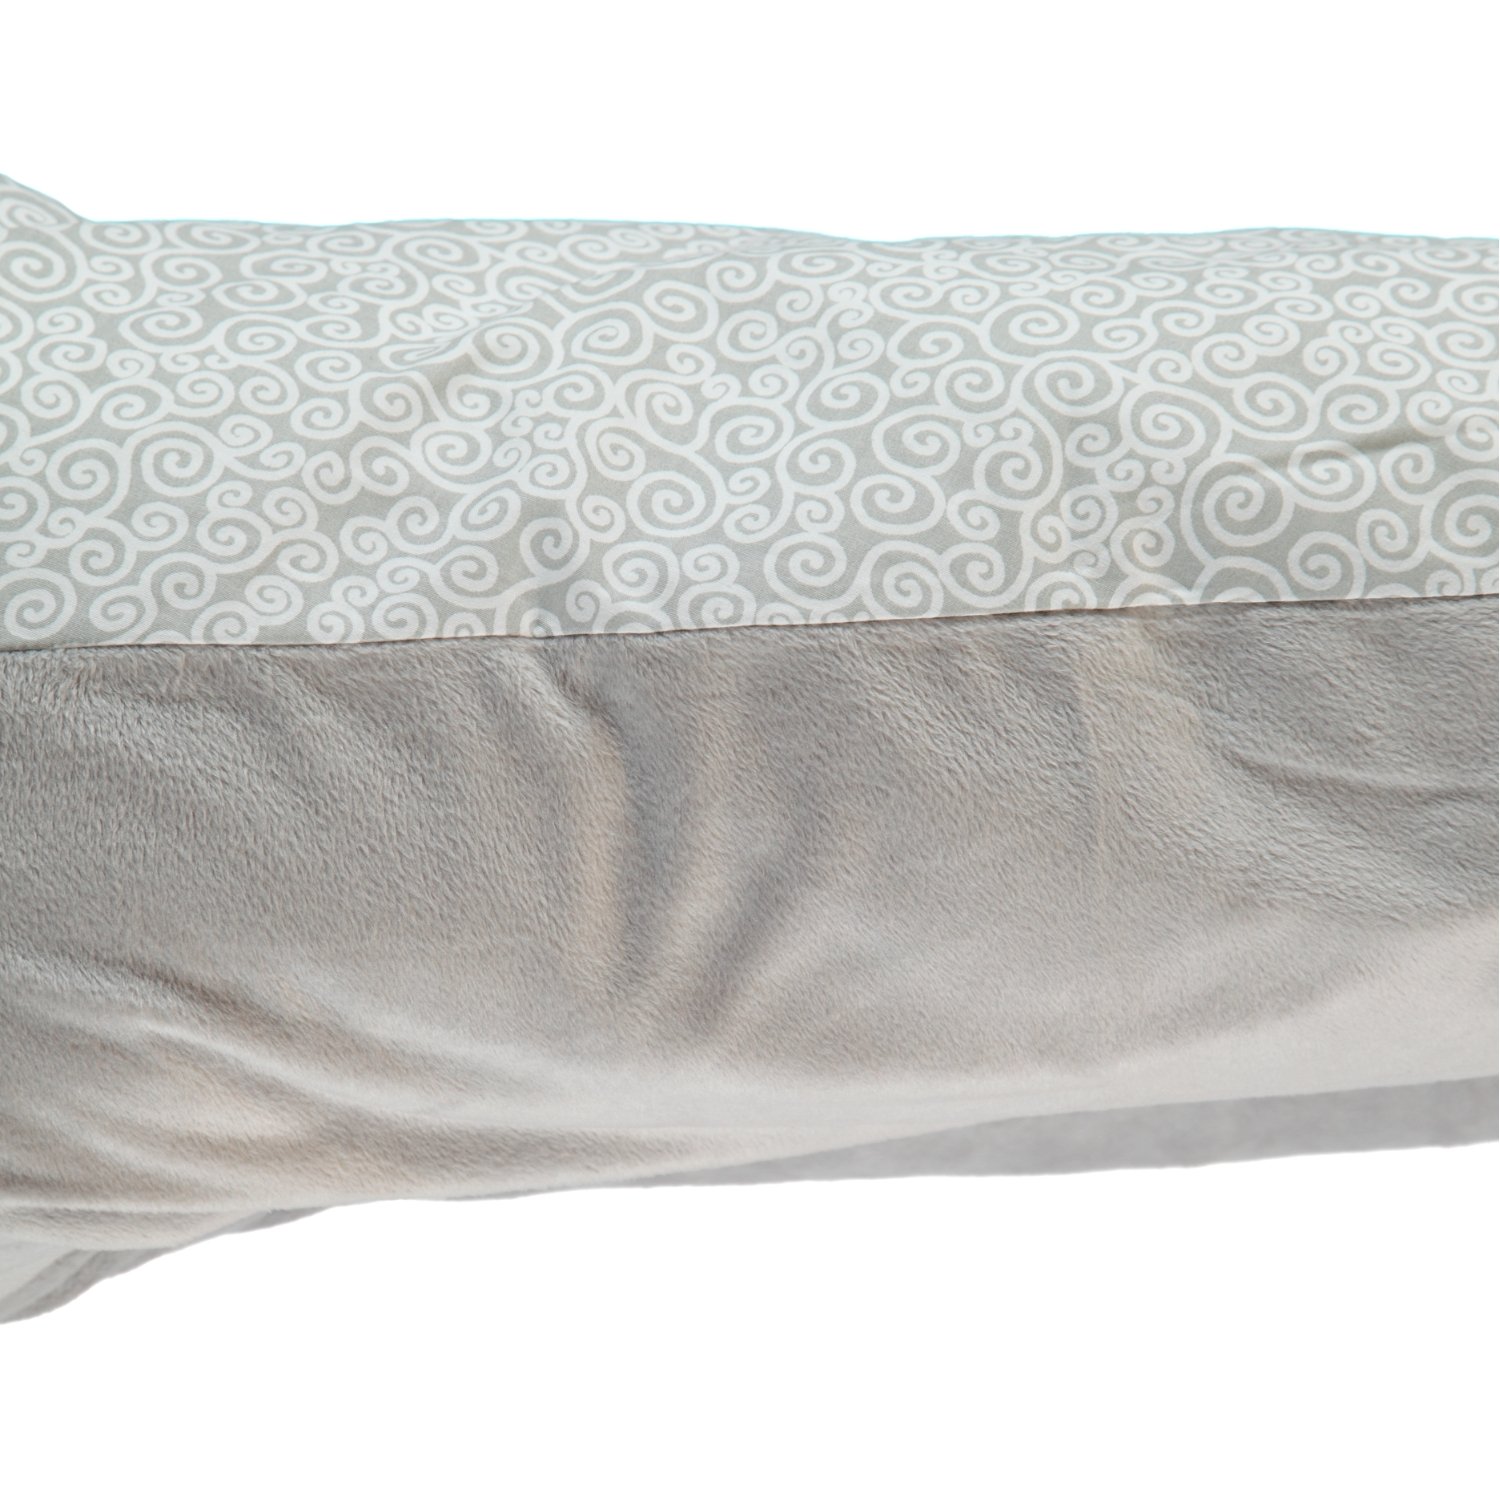 Snoozzz Eye Design Nursing Pillow